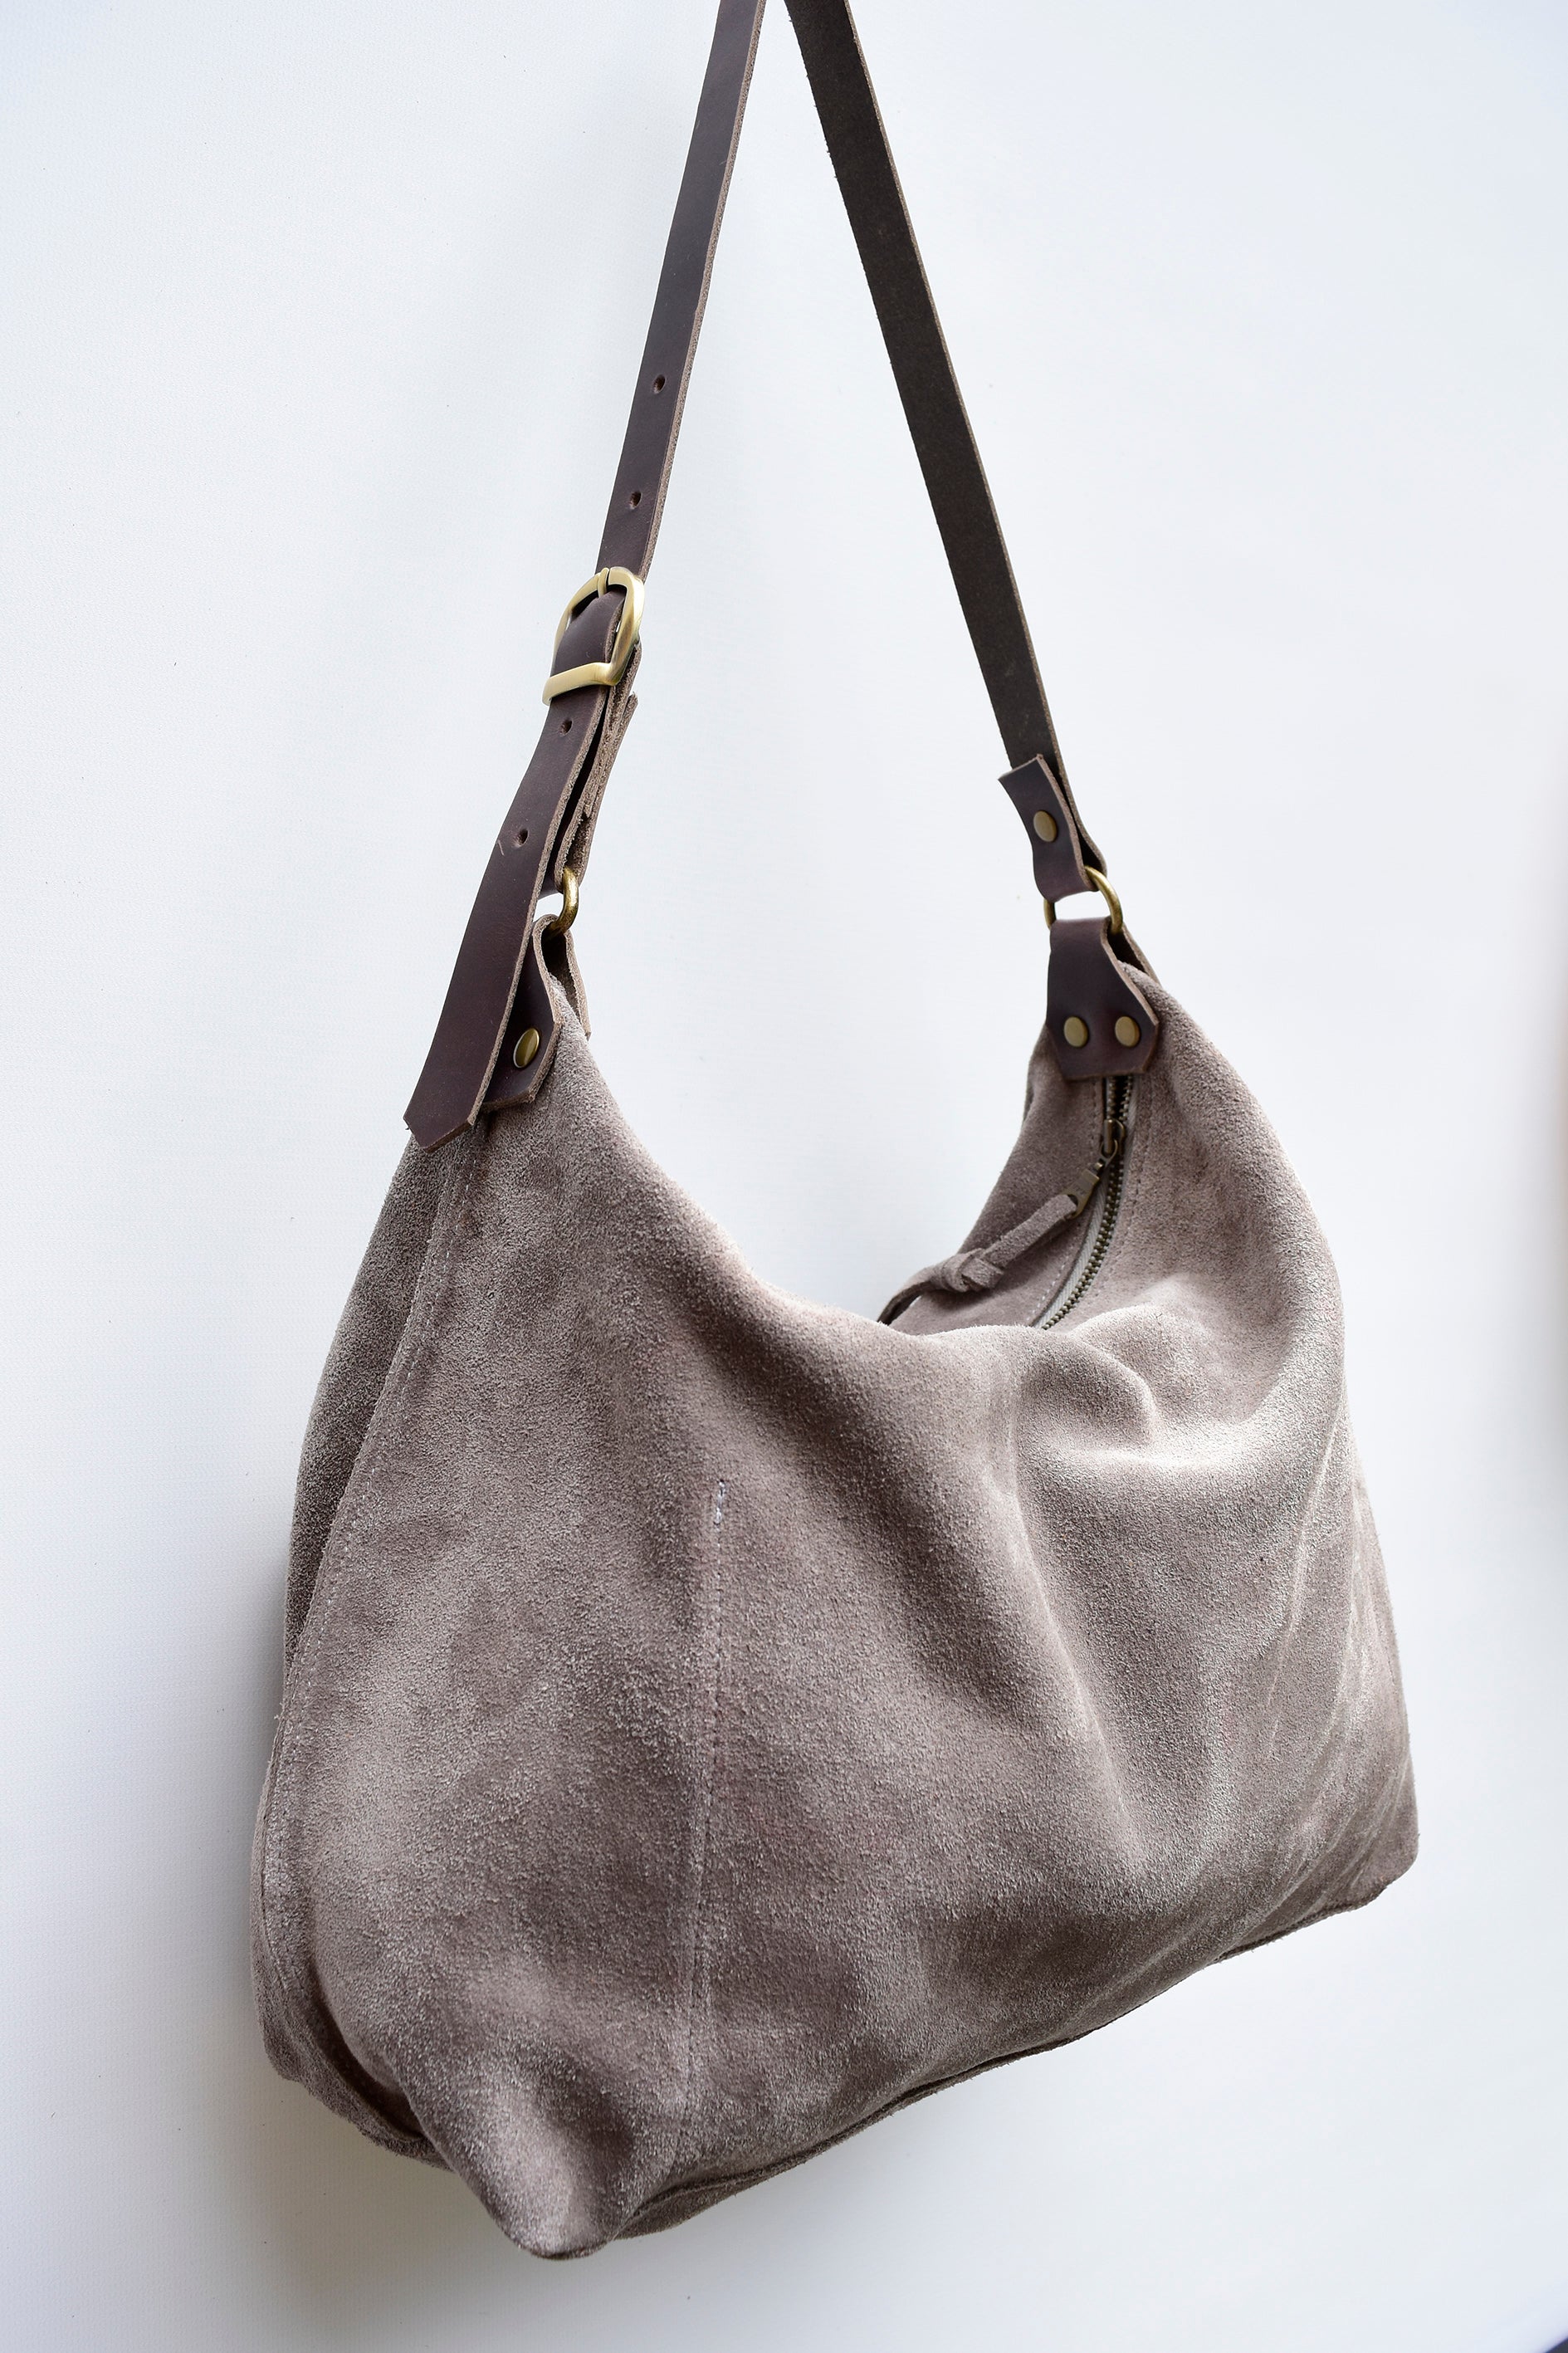 Fashion Celebrity Tassel Suede Fringe Shoulder Messenger Handbag Cross Body  Bag - Walmart.com